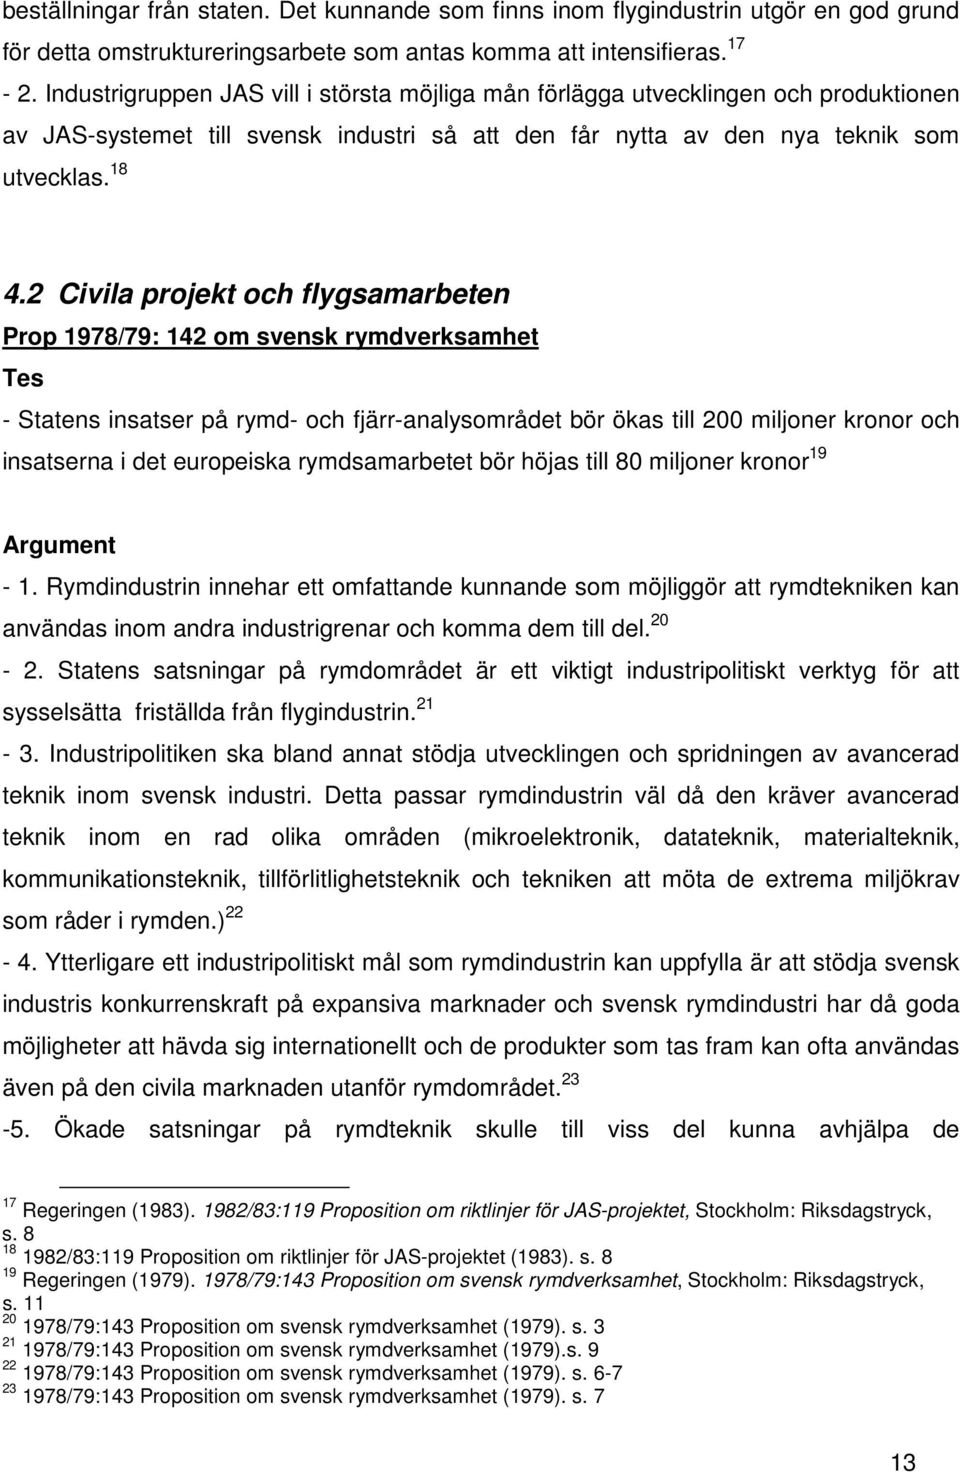 2 Civila projekt och flygsamarbeten Prop 1978/79: 142 om svensk rymdverksamhet Tes - Statens insatser på rymd- och fjärr-analysområdet bör ökas till 200 miljoner kronor och insatserna i det